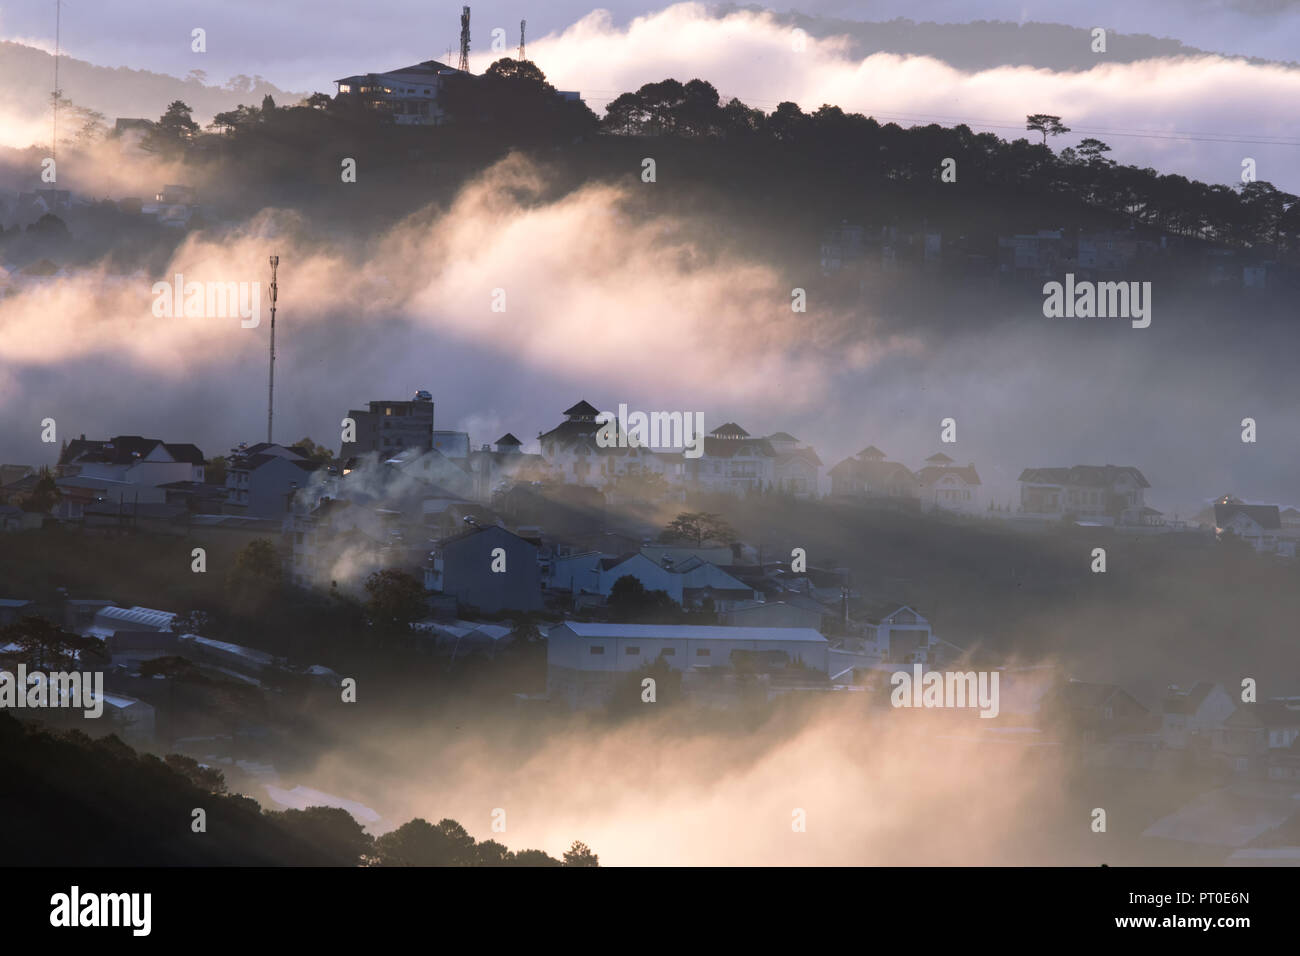 Le brouillard couvrir plateaux de Dalat, au Vietnam, l'arrière-plan avec la magie de l'épais brouillard et les rayons du soleil, du soleil à l'aube Banque D'Images